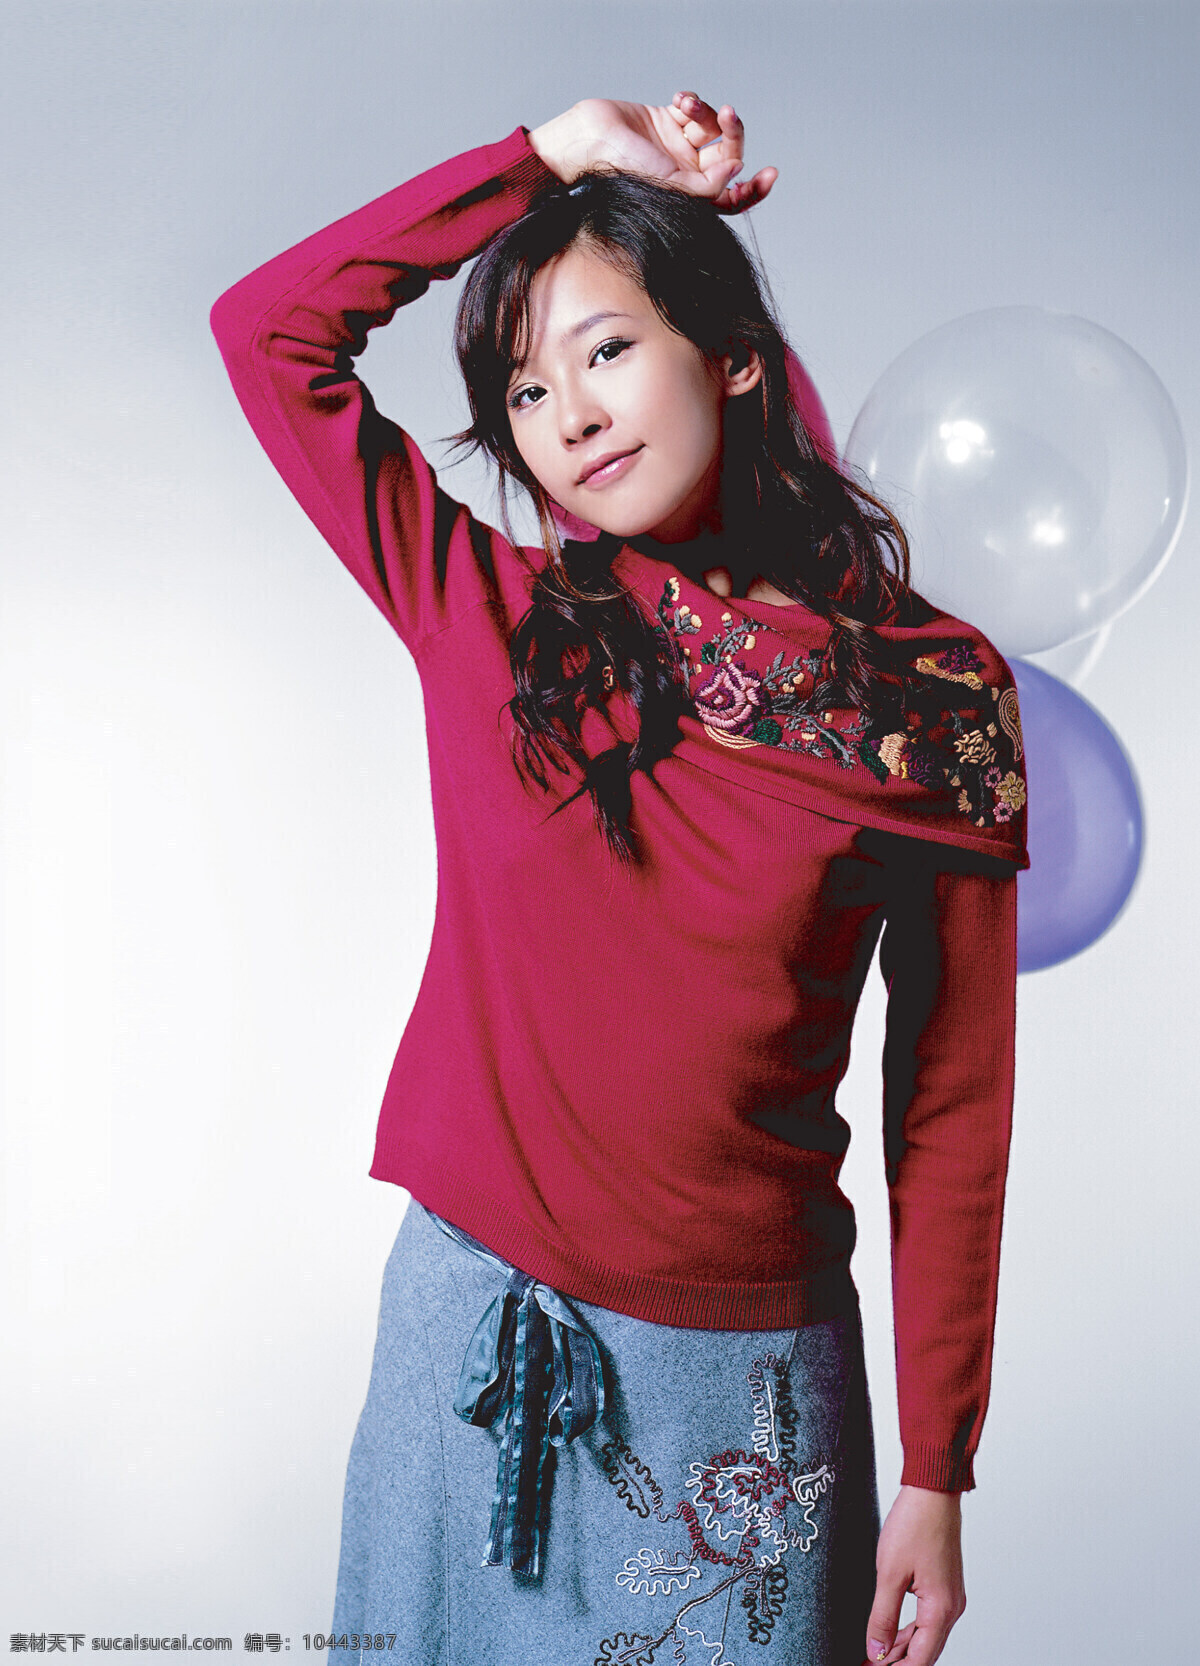 中国美女 美女 裙装 长发 红衣 气球 摄影图库 人物图库 女性女人 人物摄影